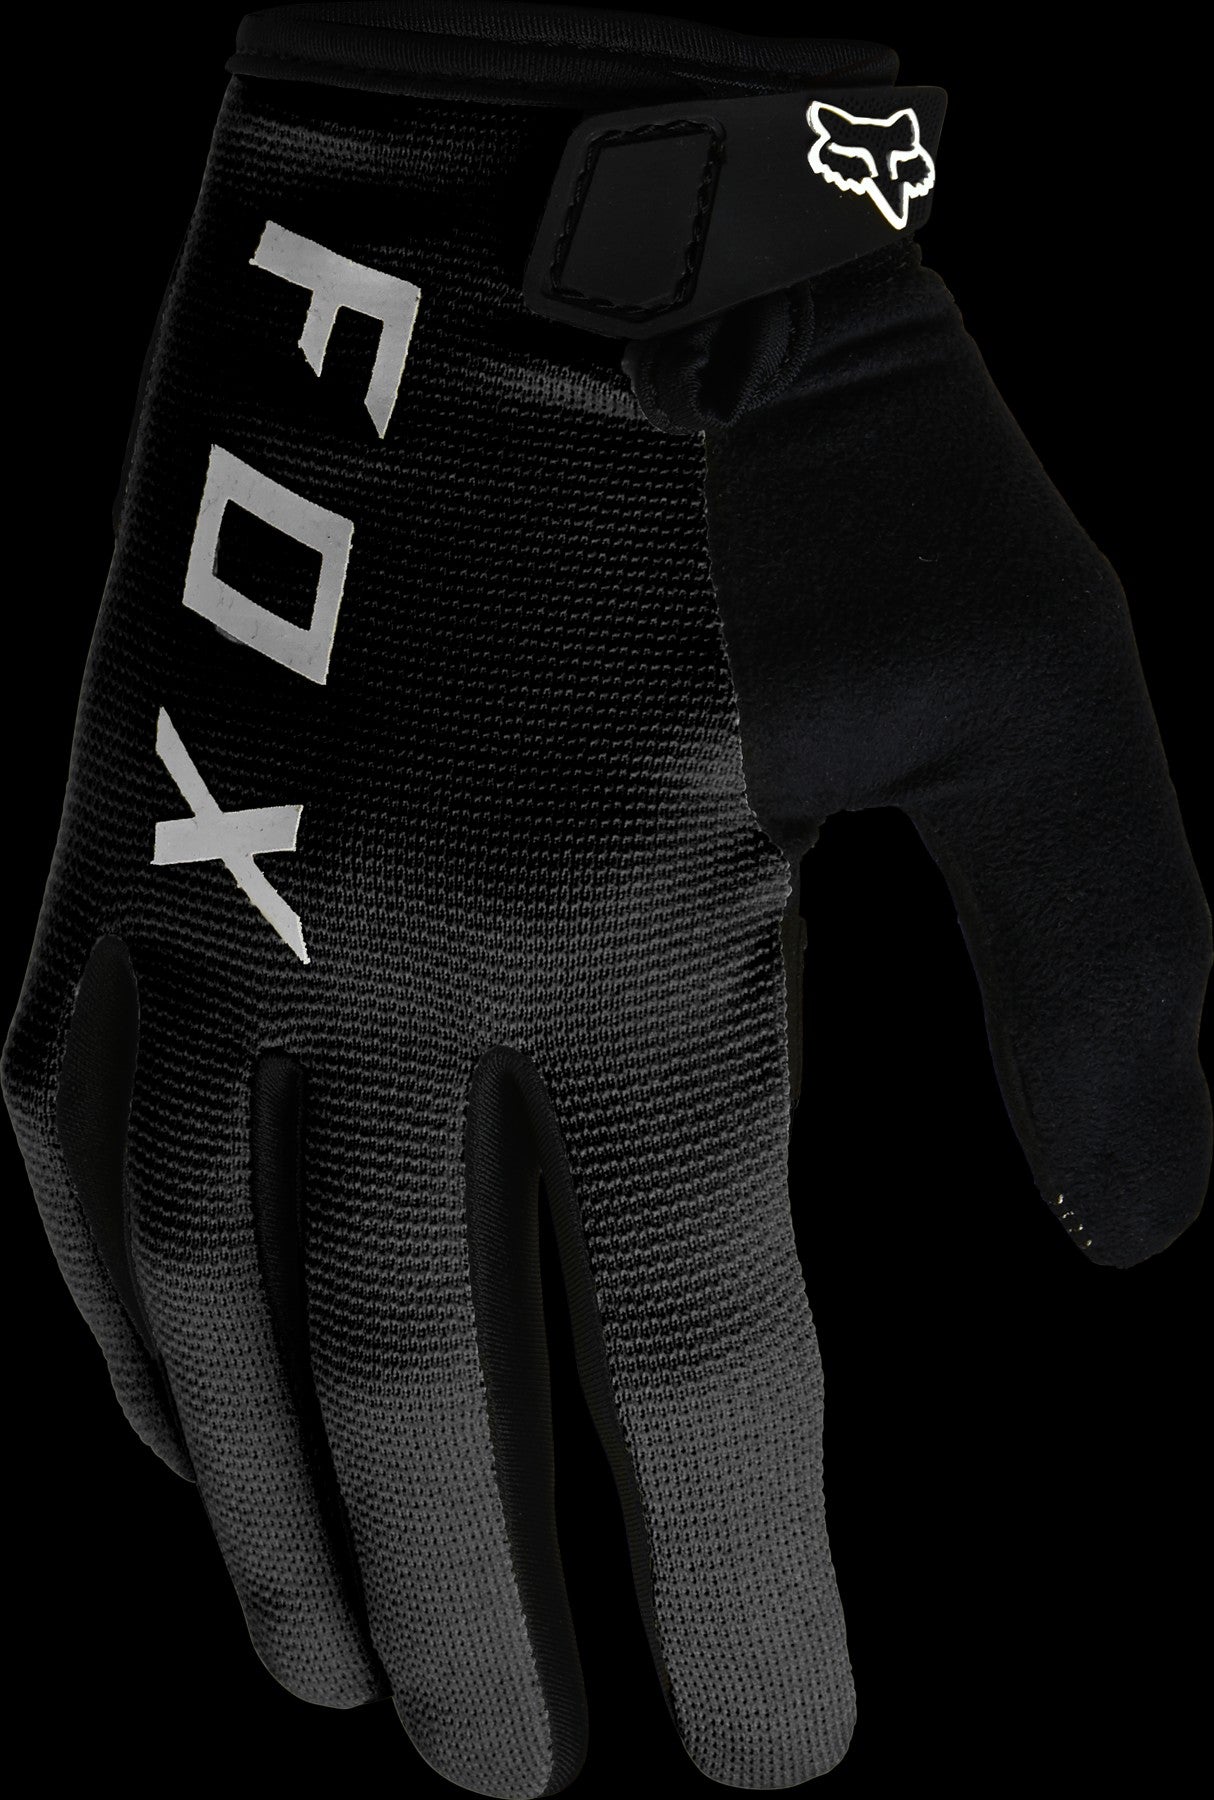 Fox Ranger Womens Gel Gloves Black